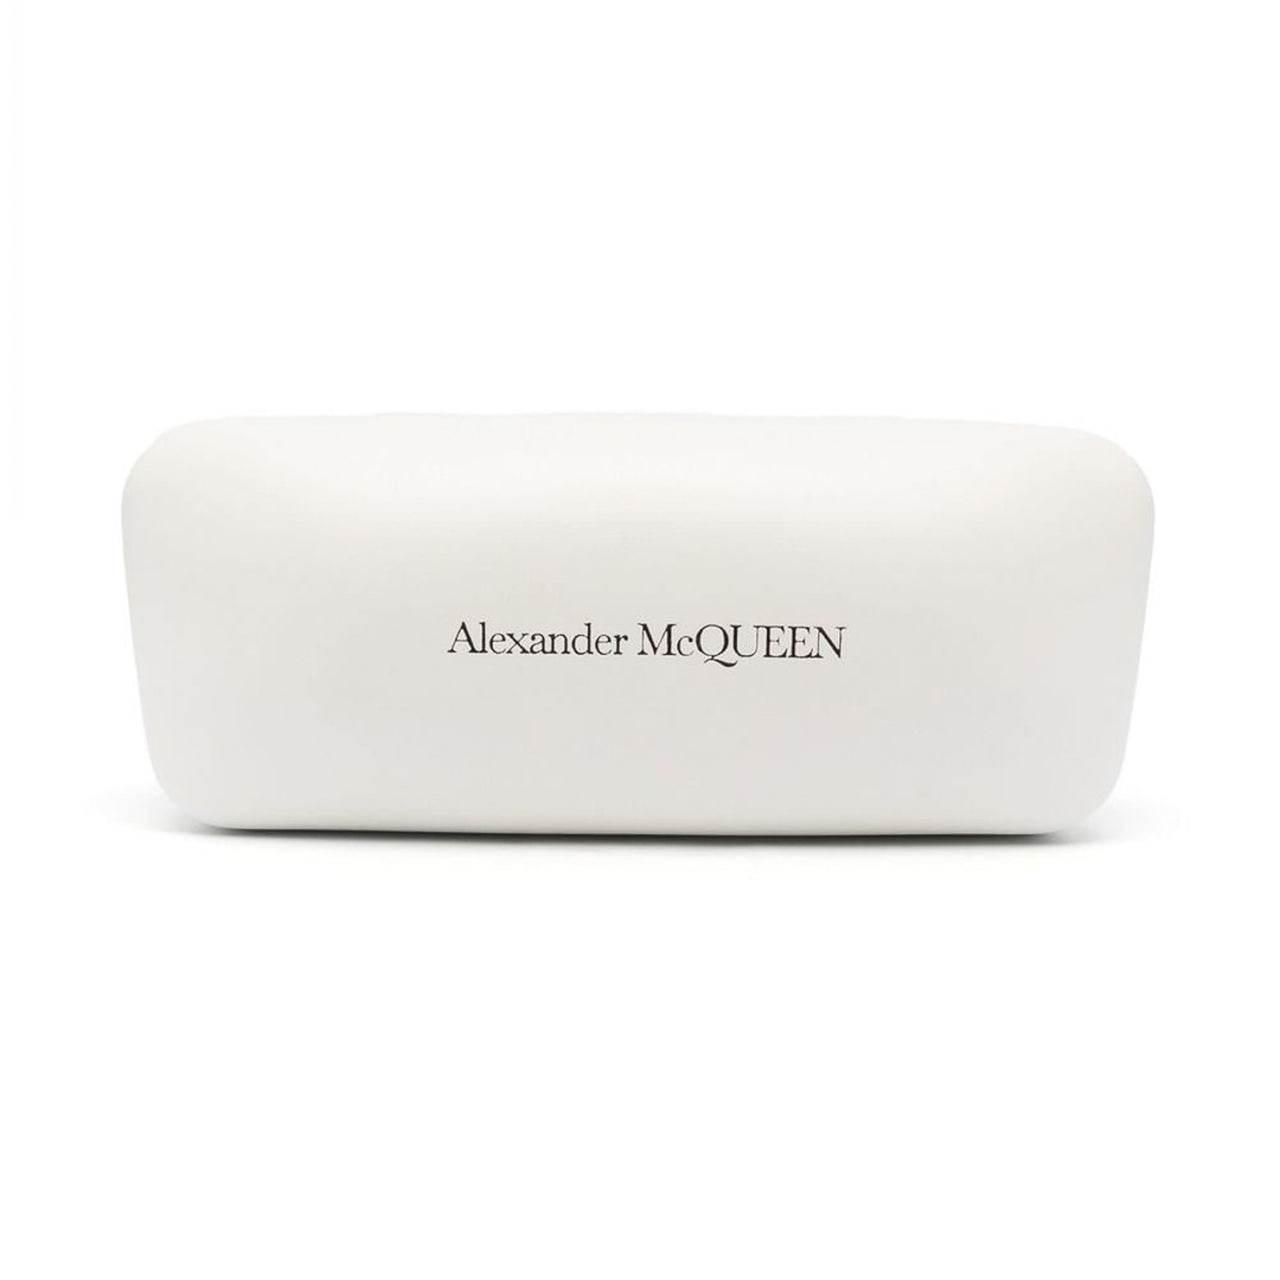 Alexander McQueen Men's Sunglasses Rectangular Blue AM0328S-004 54